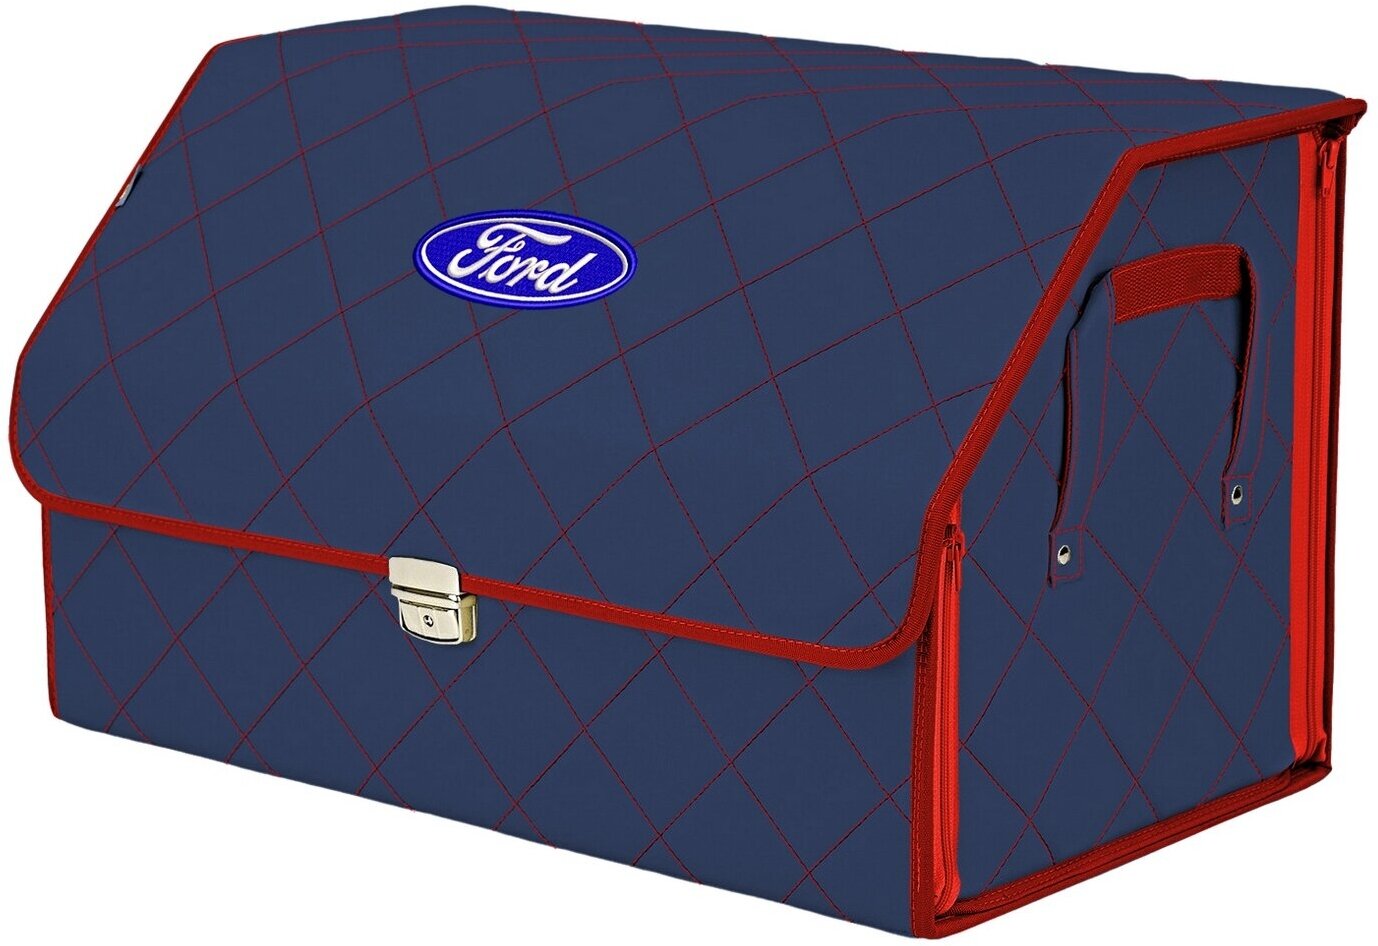 Органайзер-саквояж в багажник "Союз Премиум" (размер XL). Цвет: синий с красной прострочкой Ромб и вышивкой Ford (Форд).